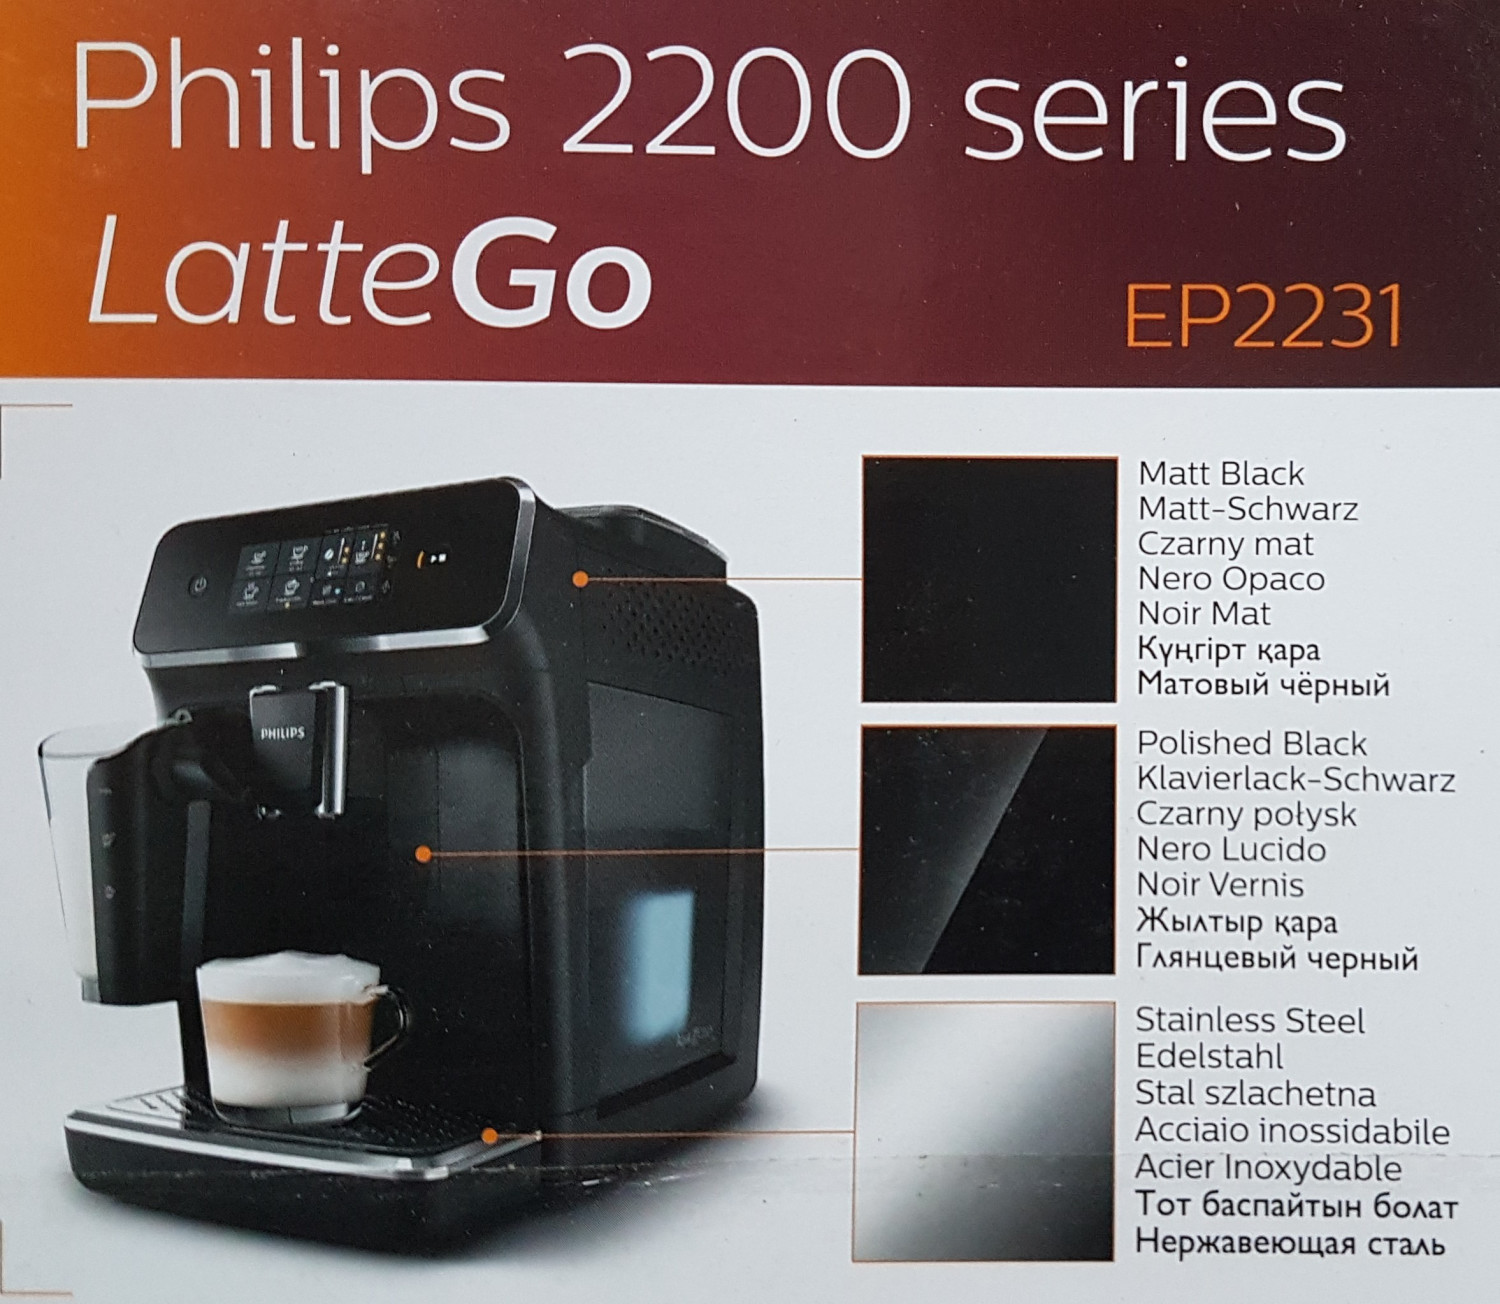 Филипс 2231 40. Philips ep2231 Series 2200 LATTEGO. Philips 2200 LATTEGO. Philips Series 2200 ep2231/40. Philips 2231.